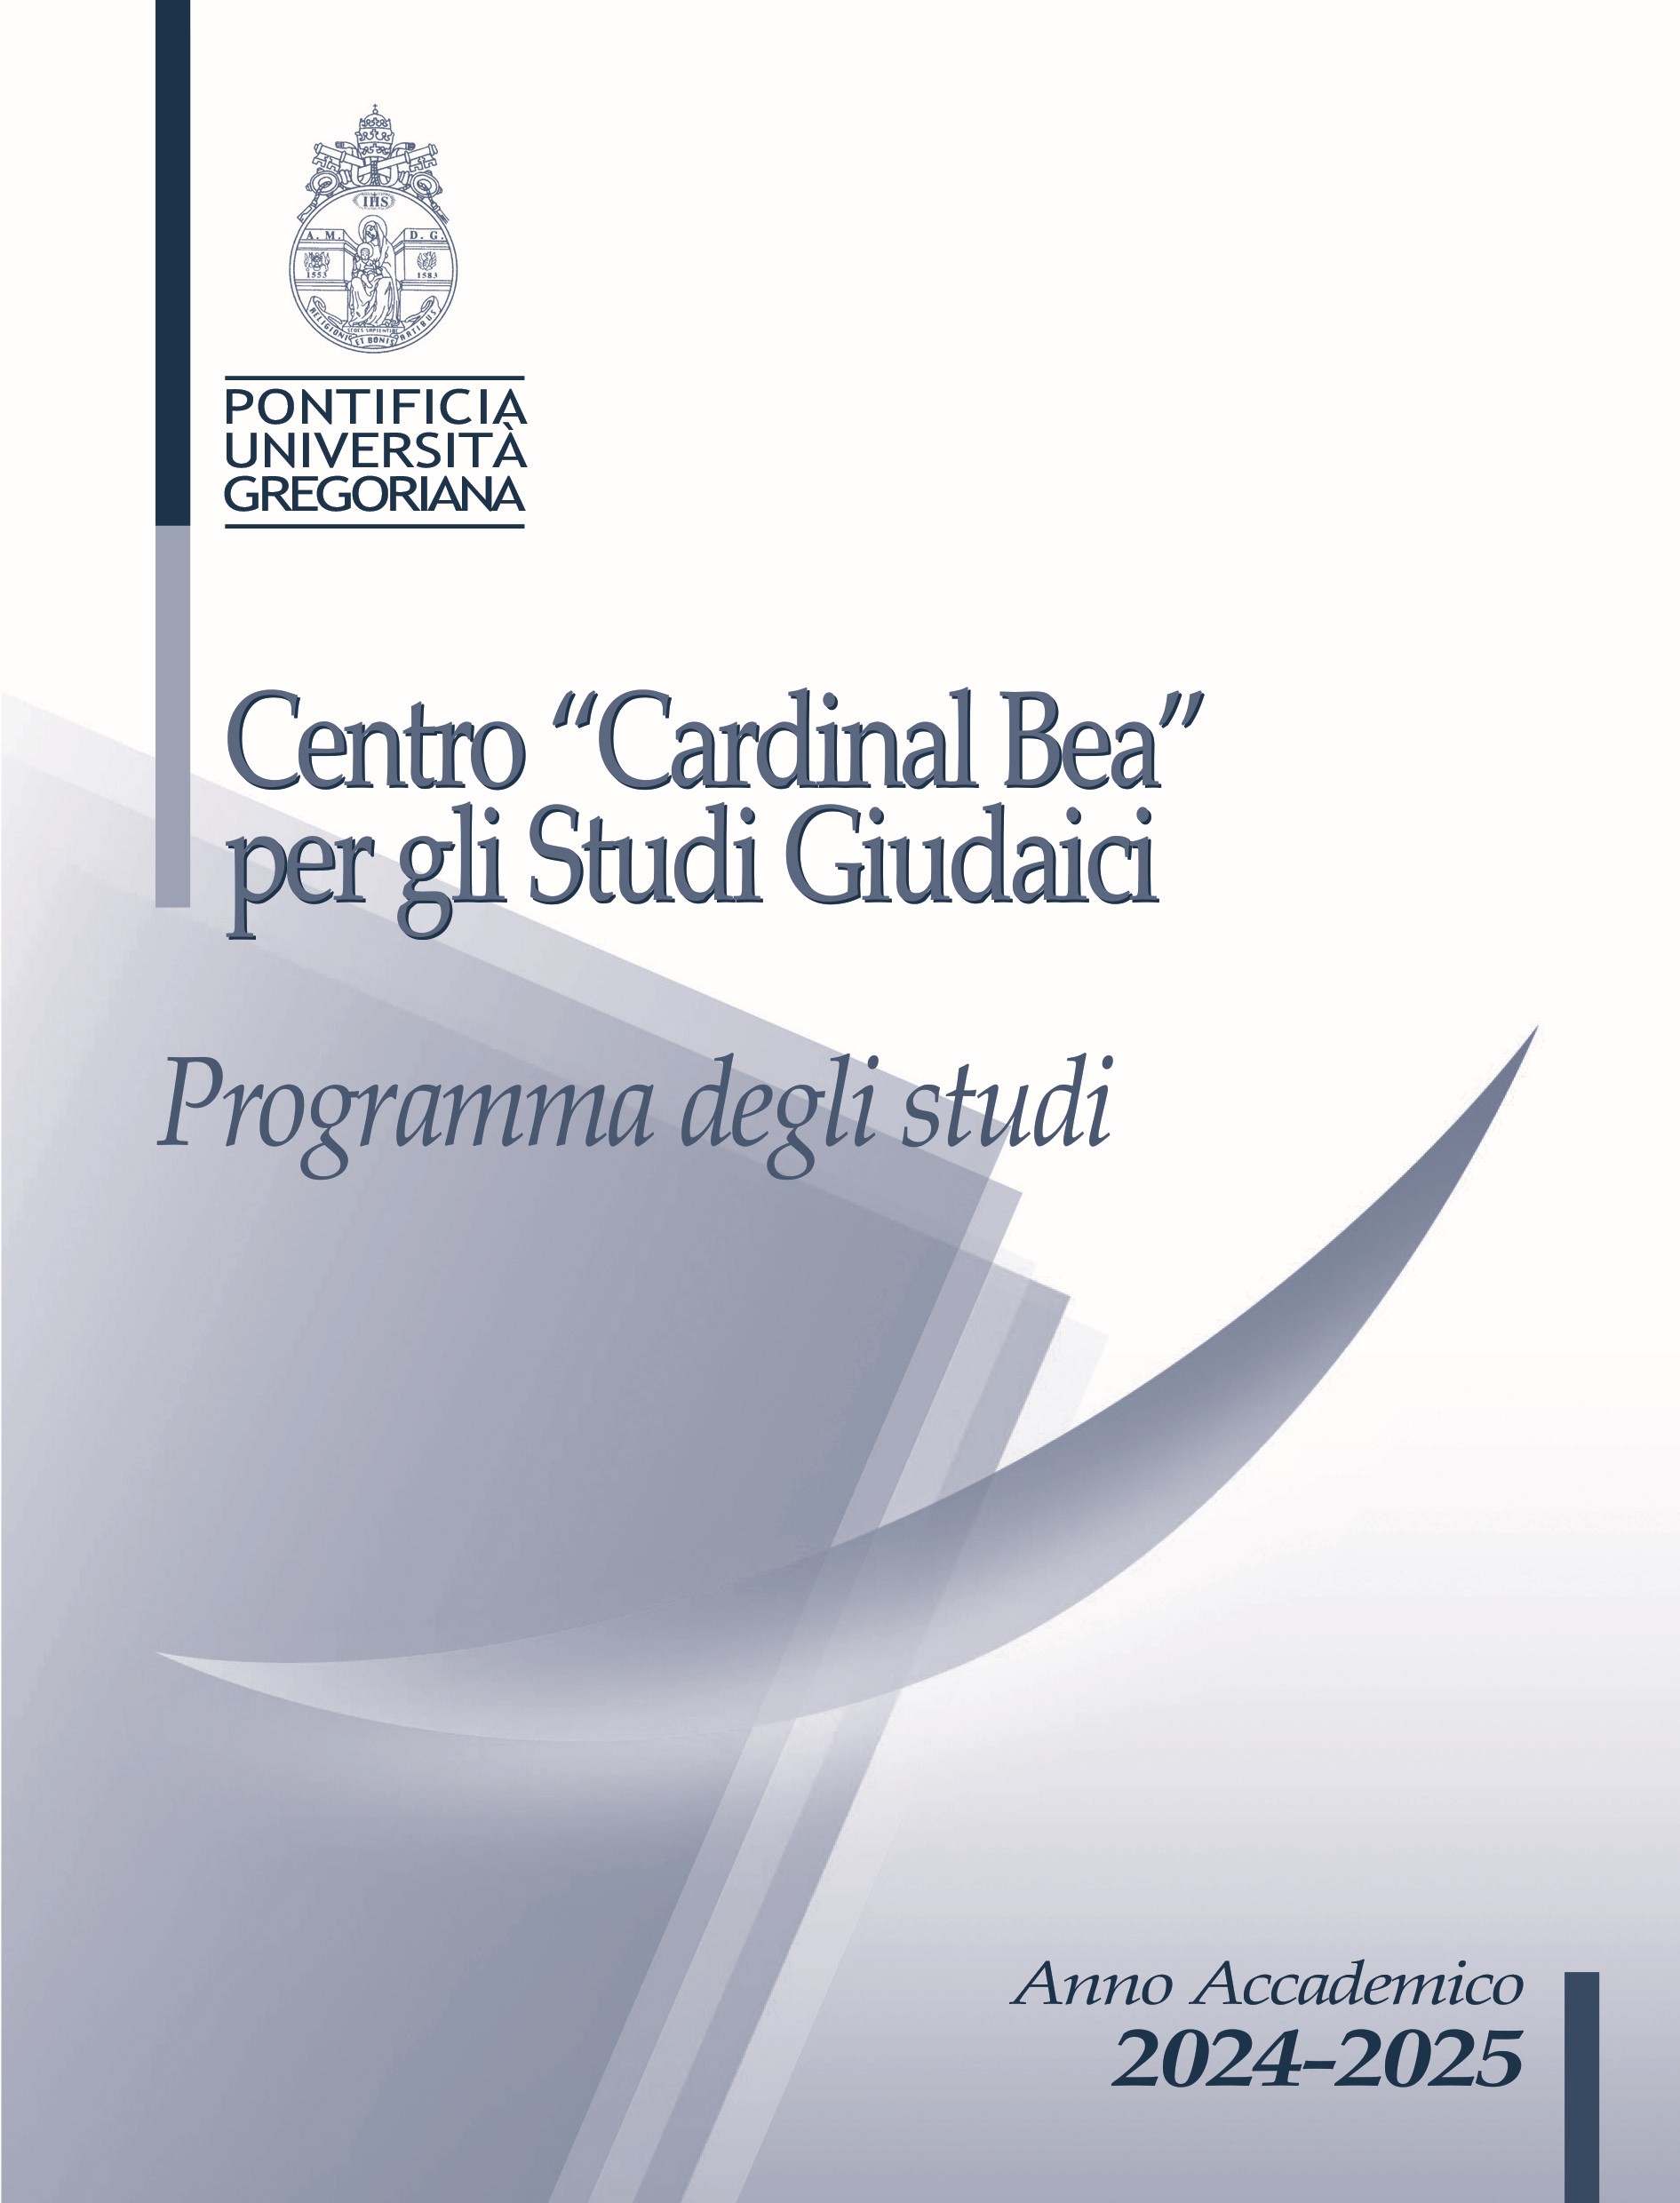 Cardinal Bea Centre for Judaic Studies